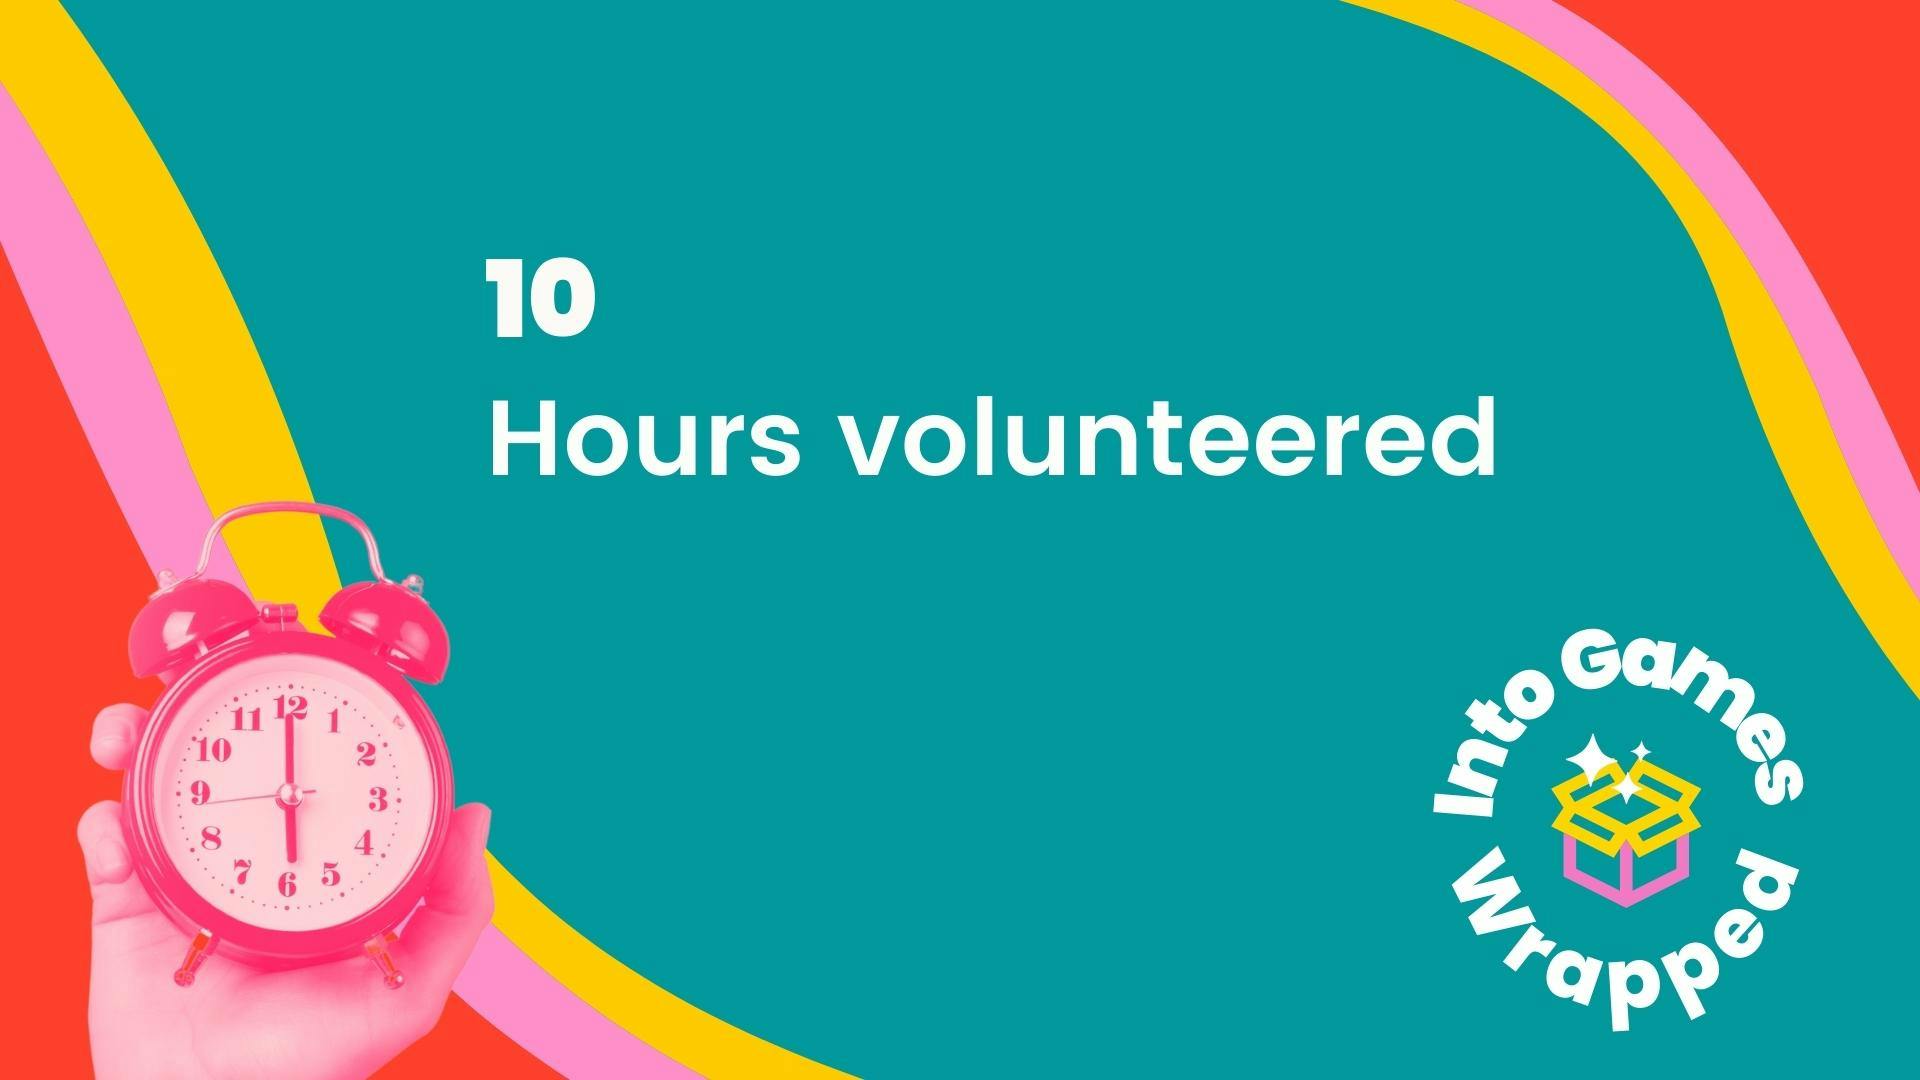 10 Hours volunteered